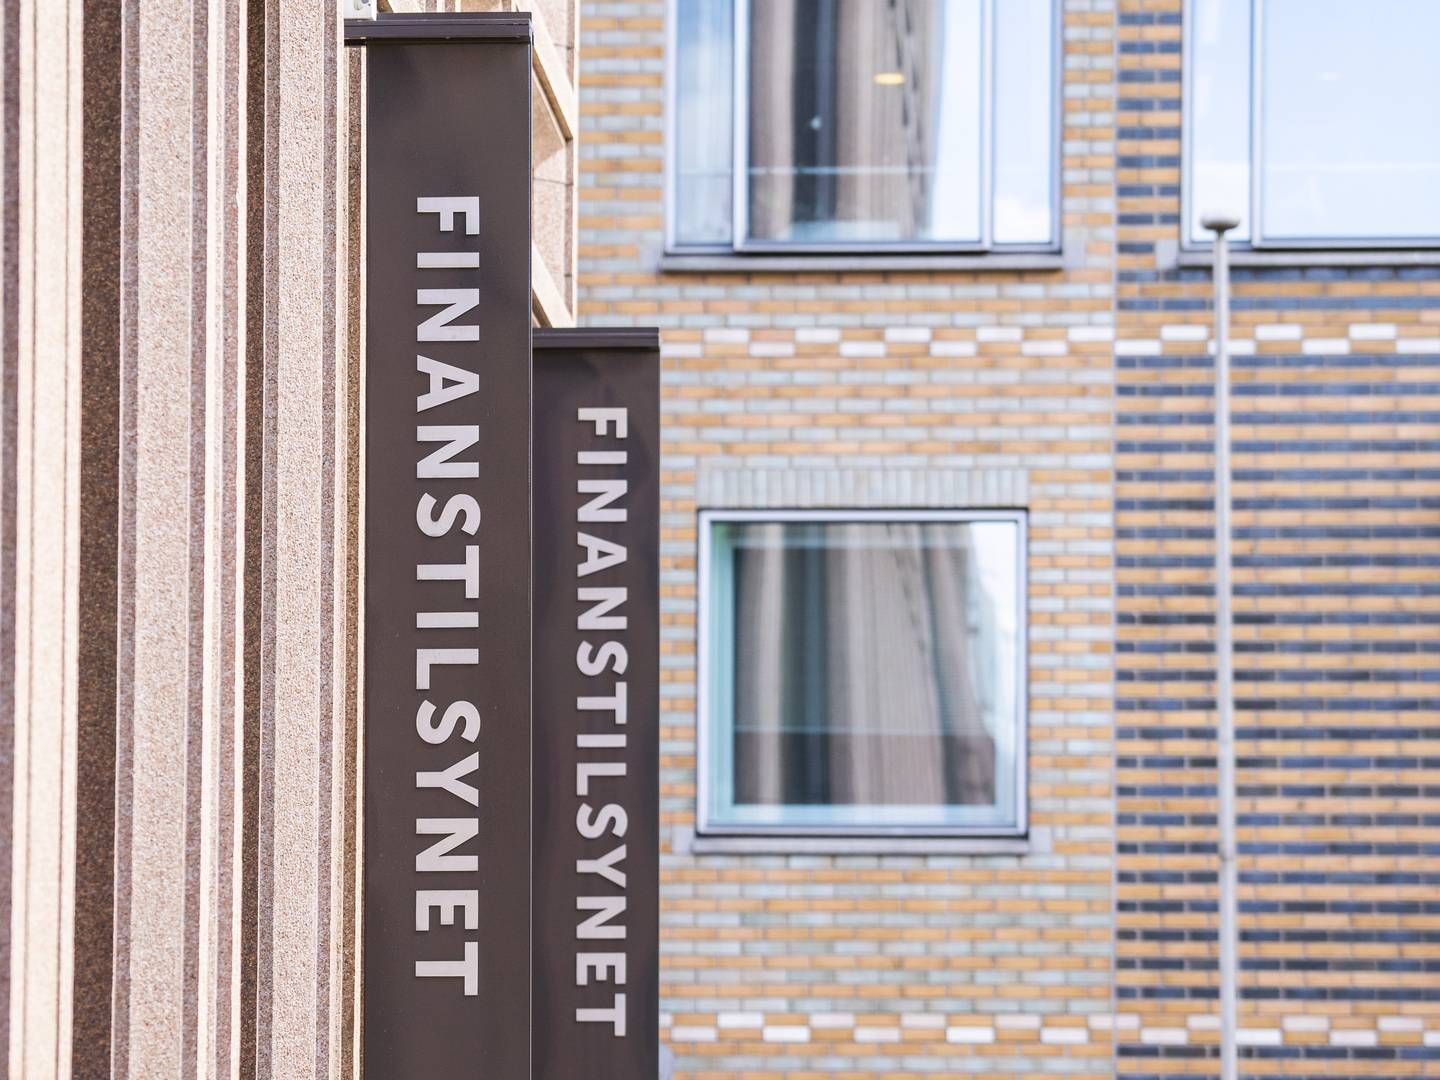 Finanstilsynets lokaler ved Norges Bank i Oslo. | Foto: Håkon Mosvold Larsen/NTB